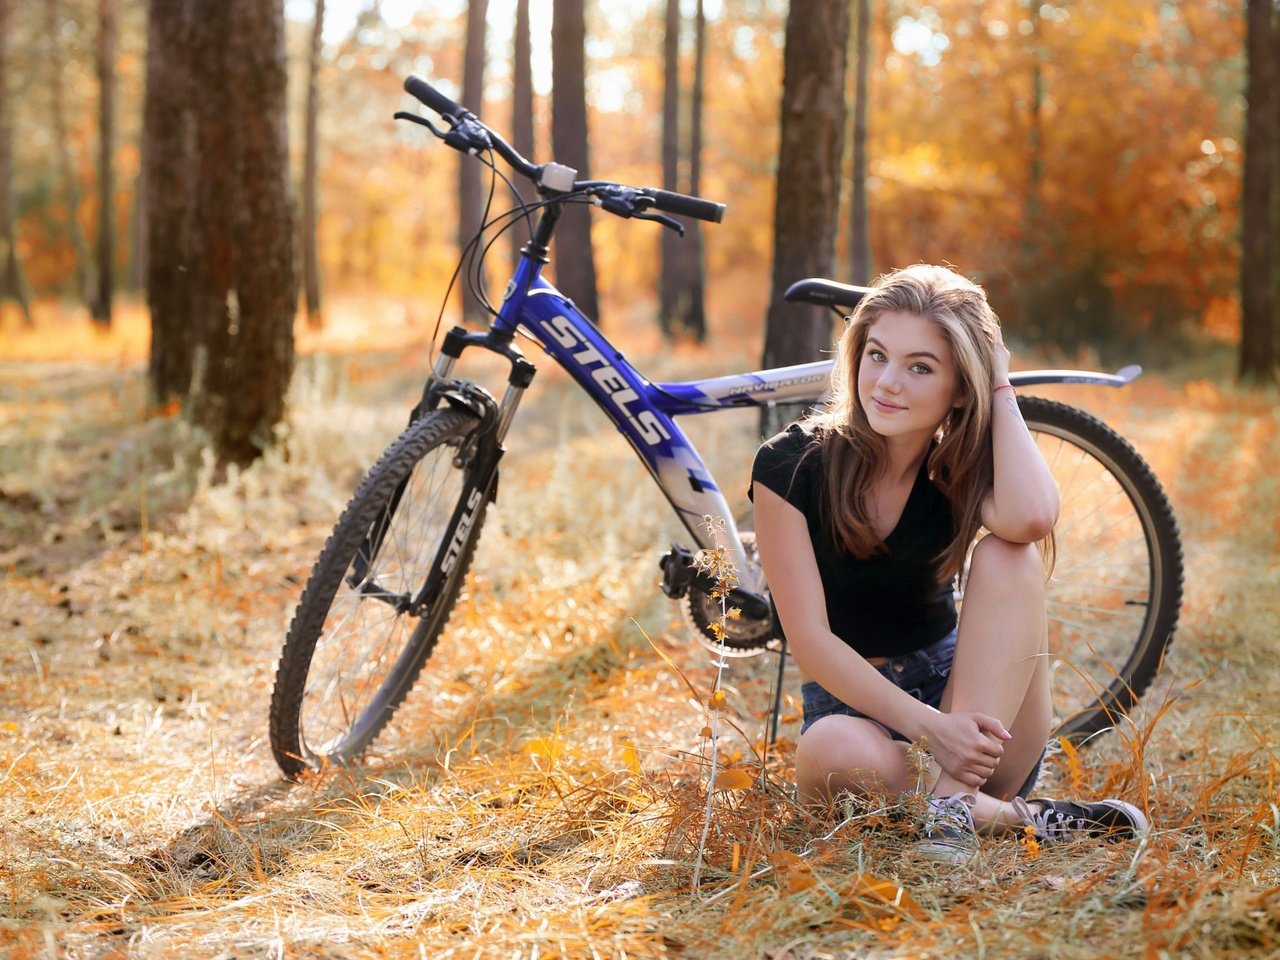 Позы для фото на велосипеде для девушки